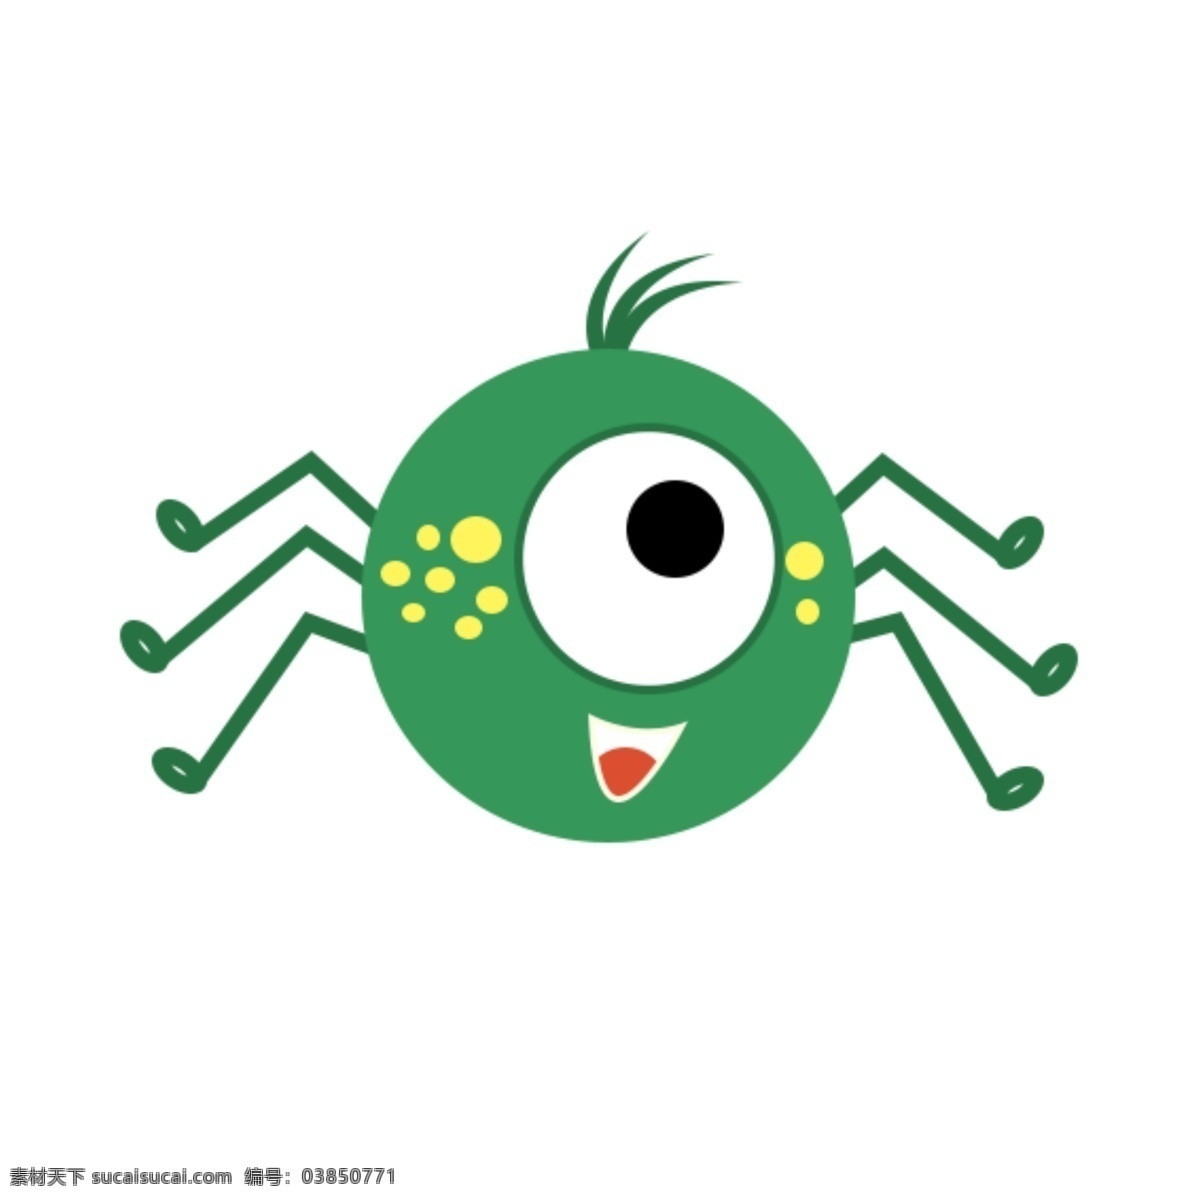 绿色 动物 可爱 小 蜘蛛 元素 小蜘蛛 动物元素